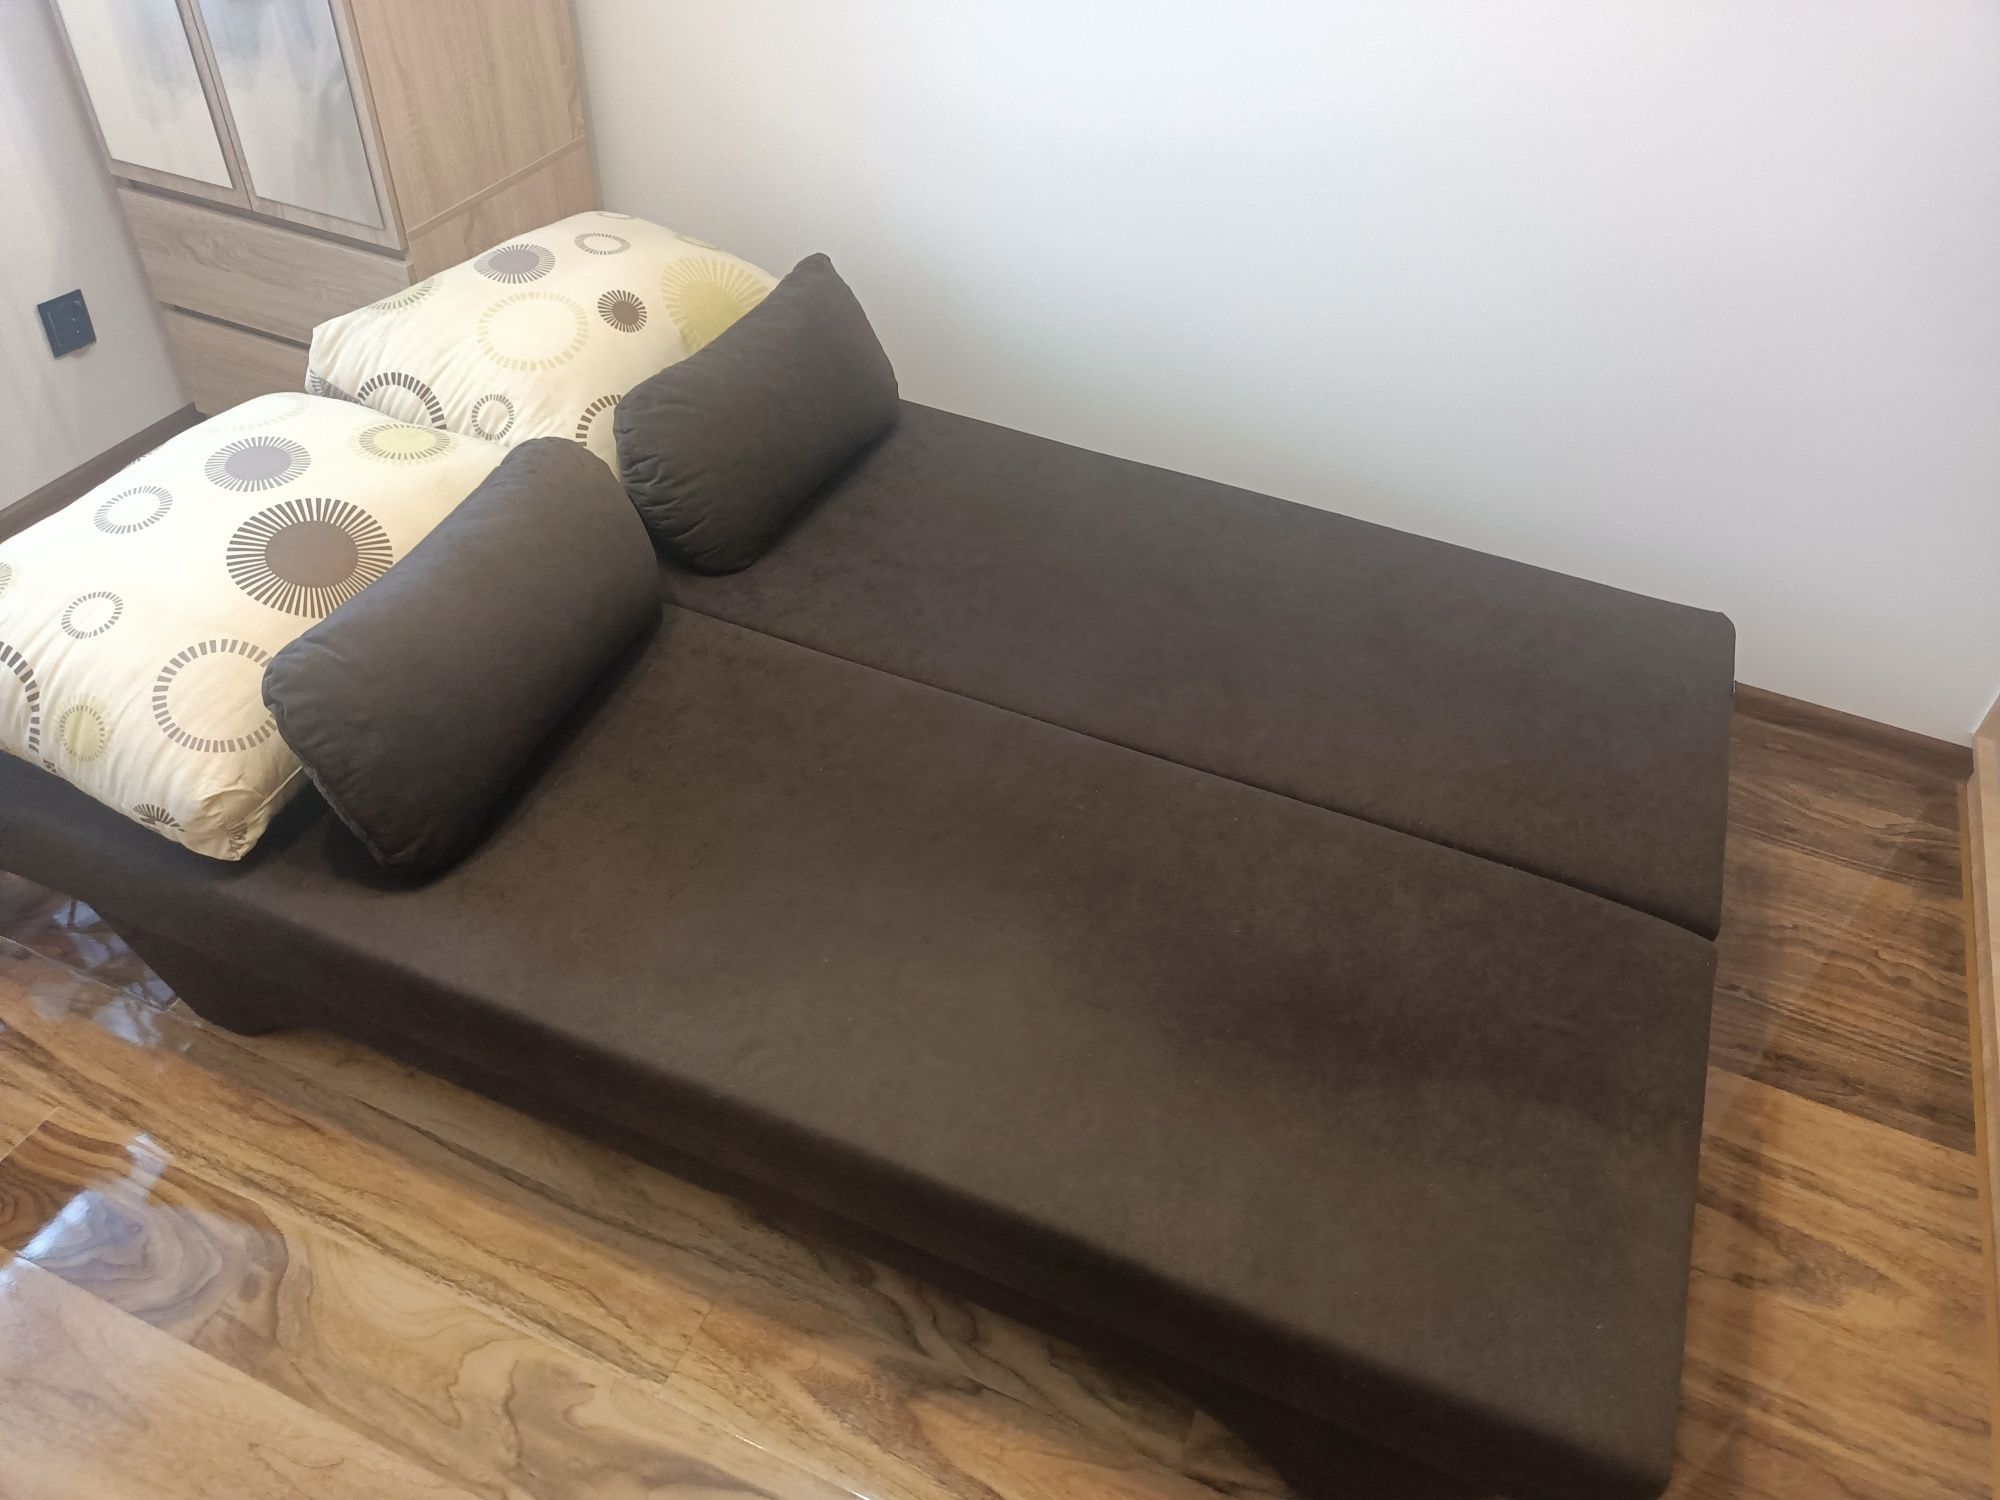 Sofa/kanapa rozkładana z pojemnikiem na pościel